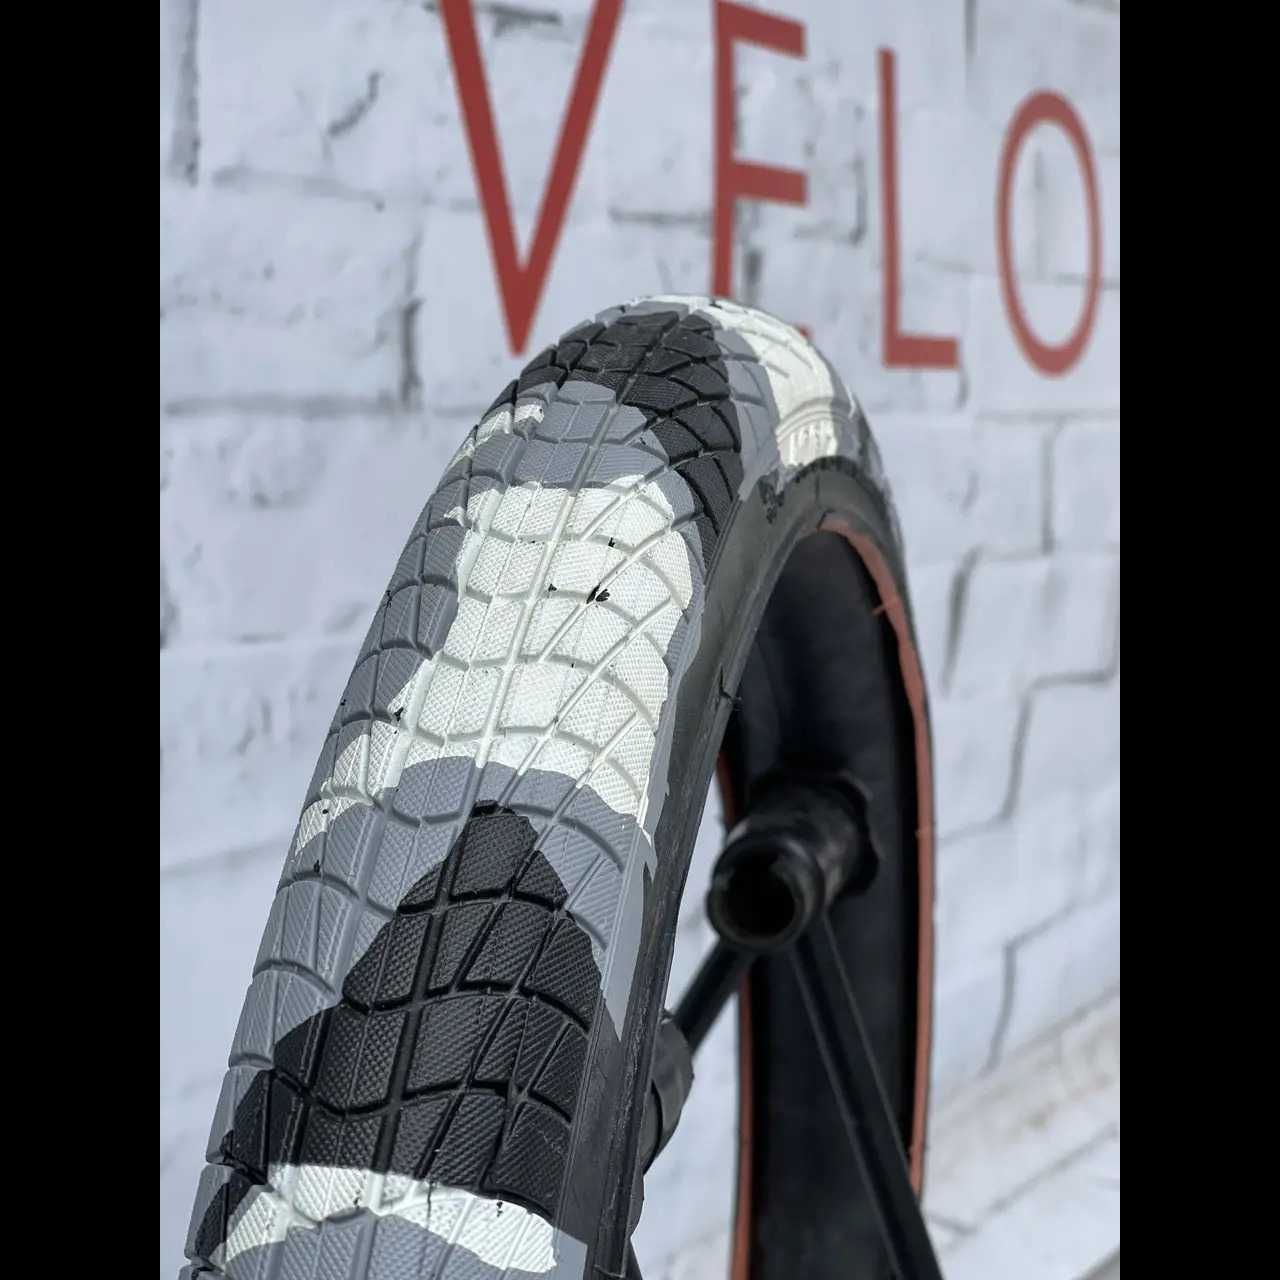 Външни гуми за БМХ велосипед Grafit 20 x 2.125 (54-406)